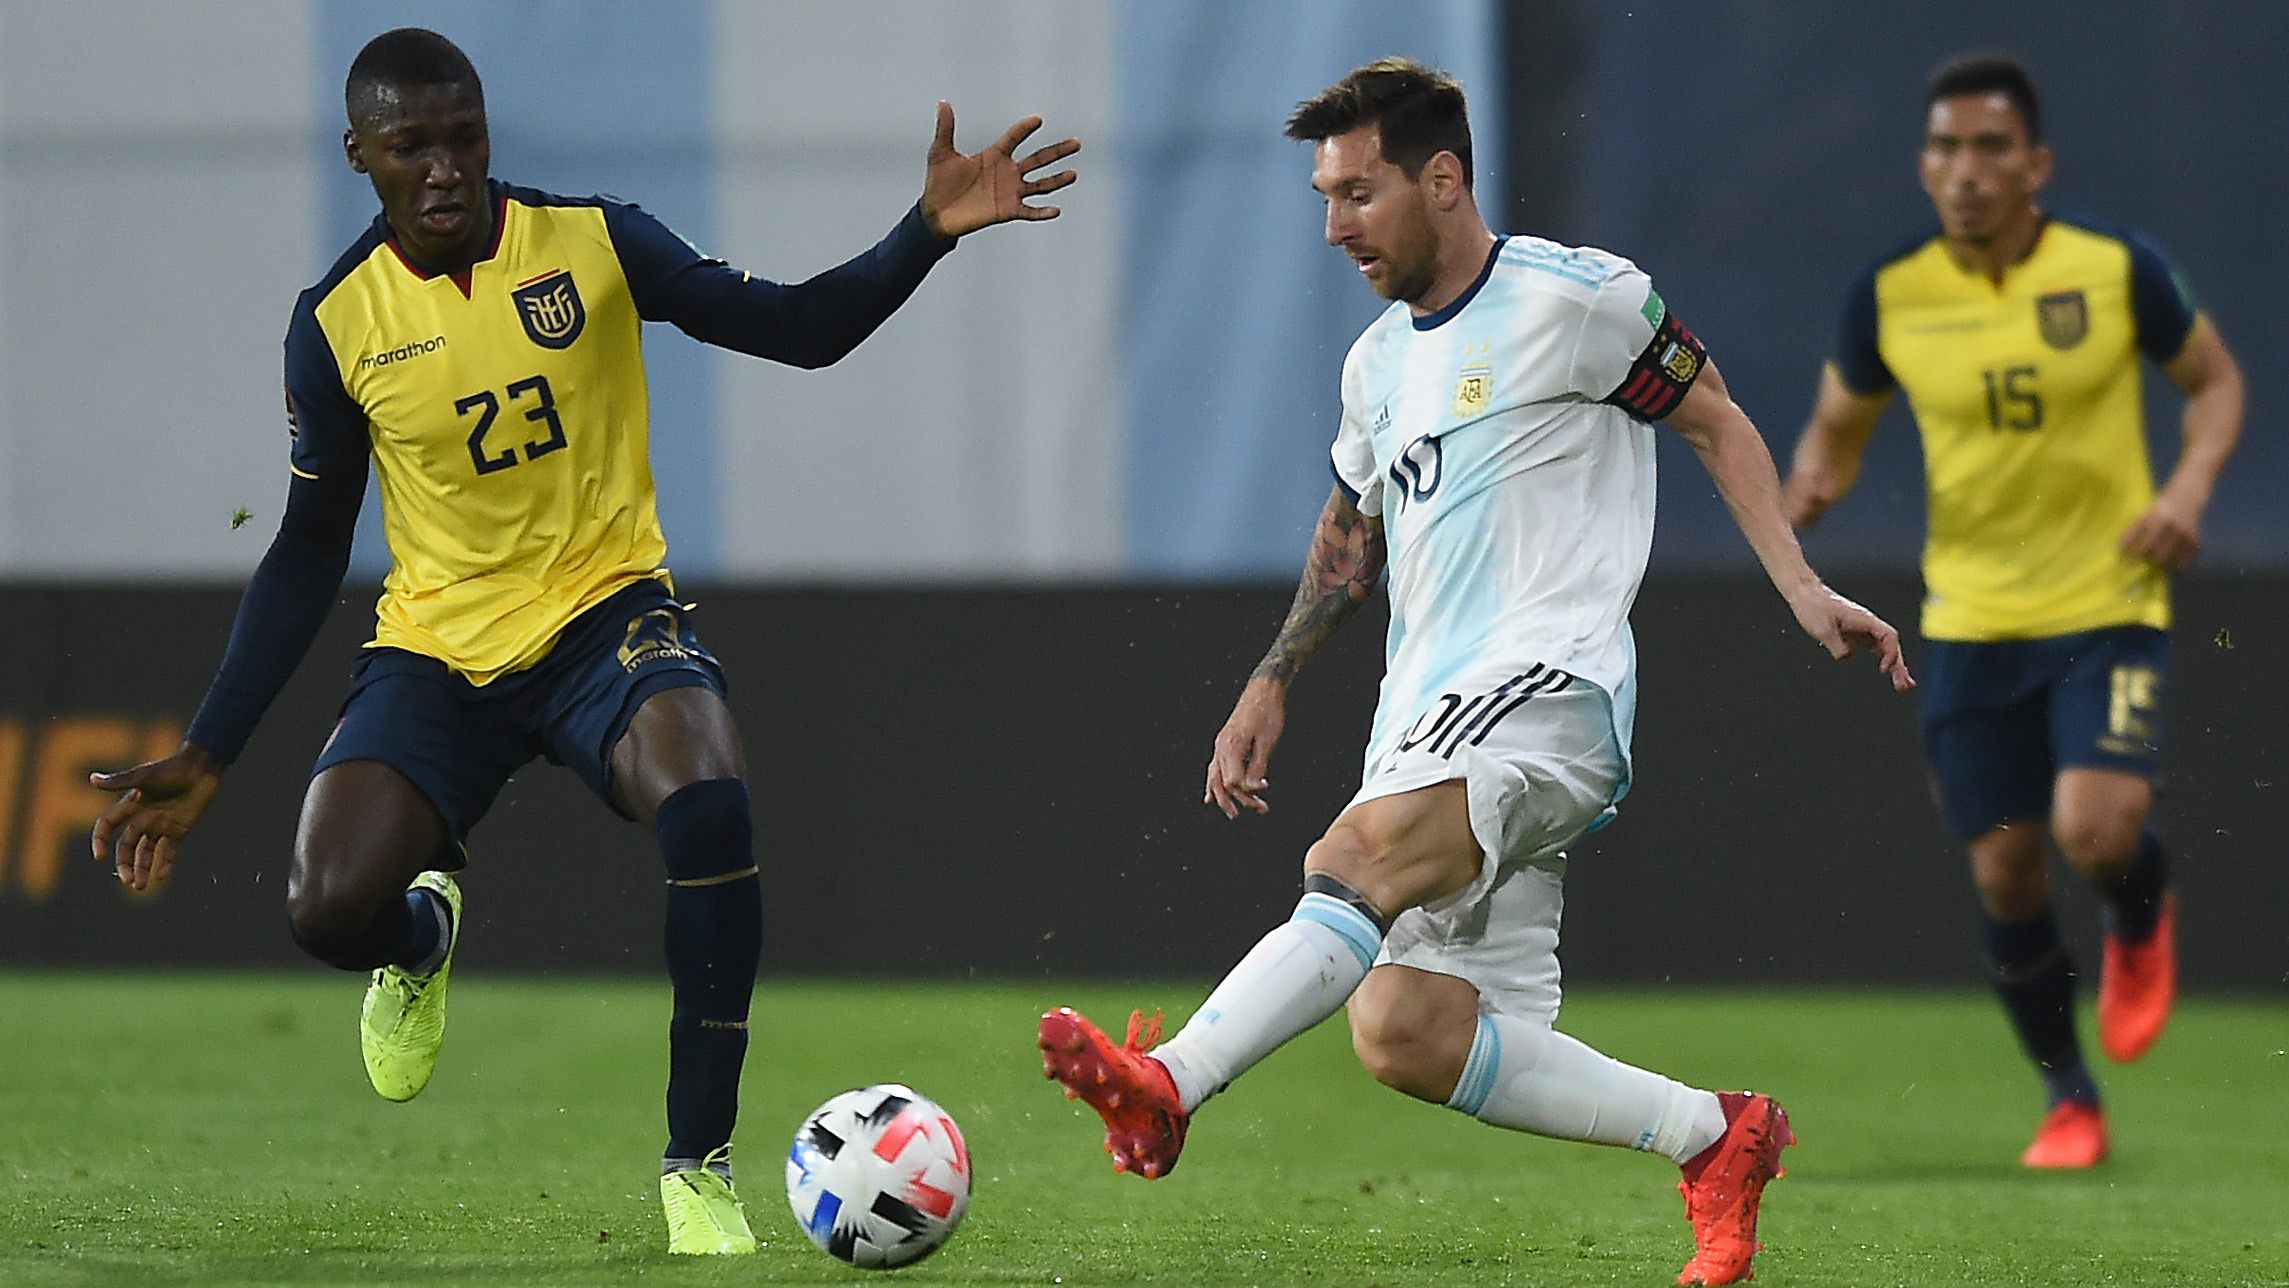 Egy képen a két taroló egy Ecuador–Argentína vb-selejtezőn: balra Caicedo, jobbra Messi (Fotó: Getty Images)